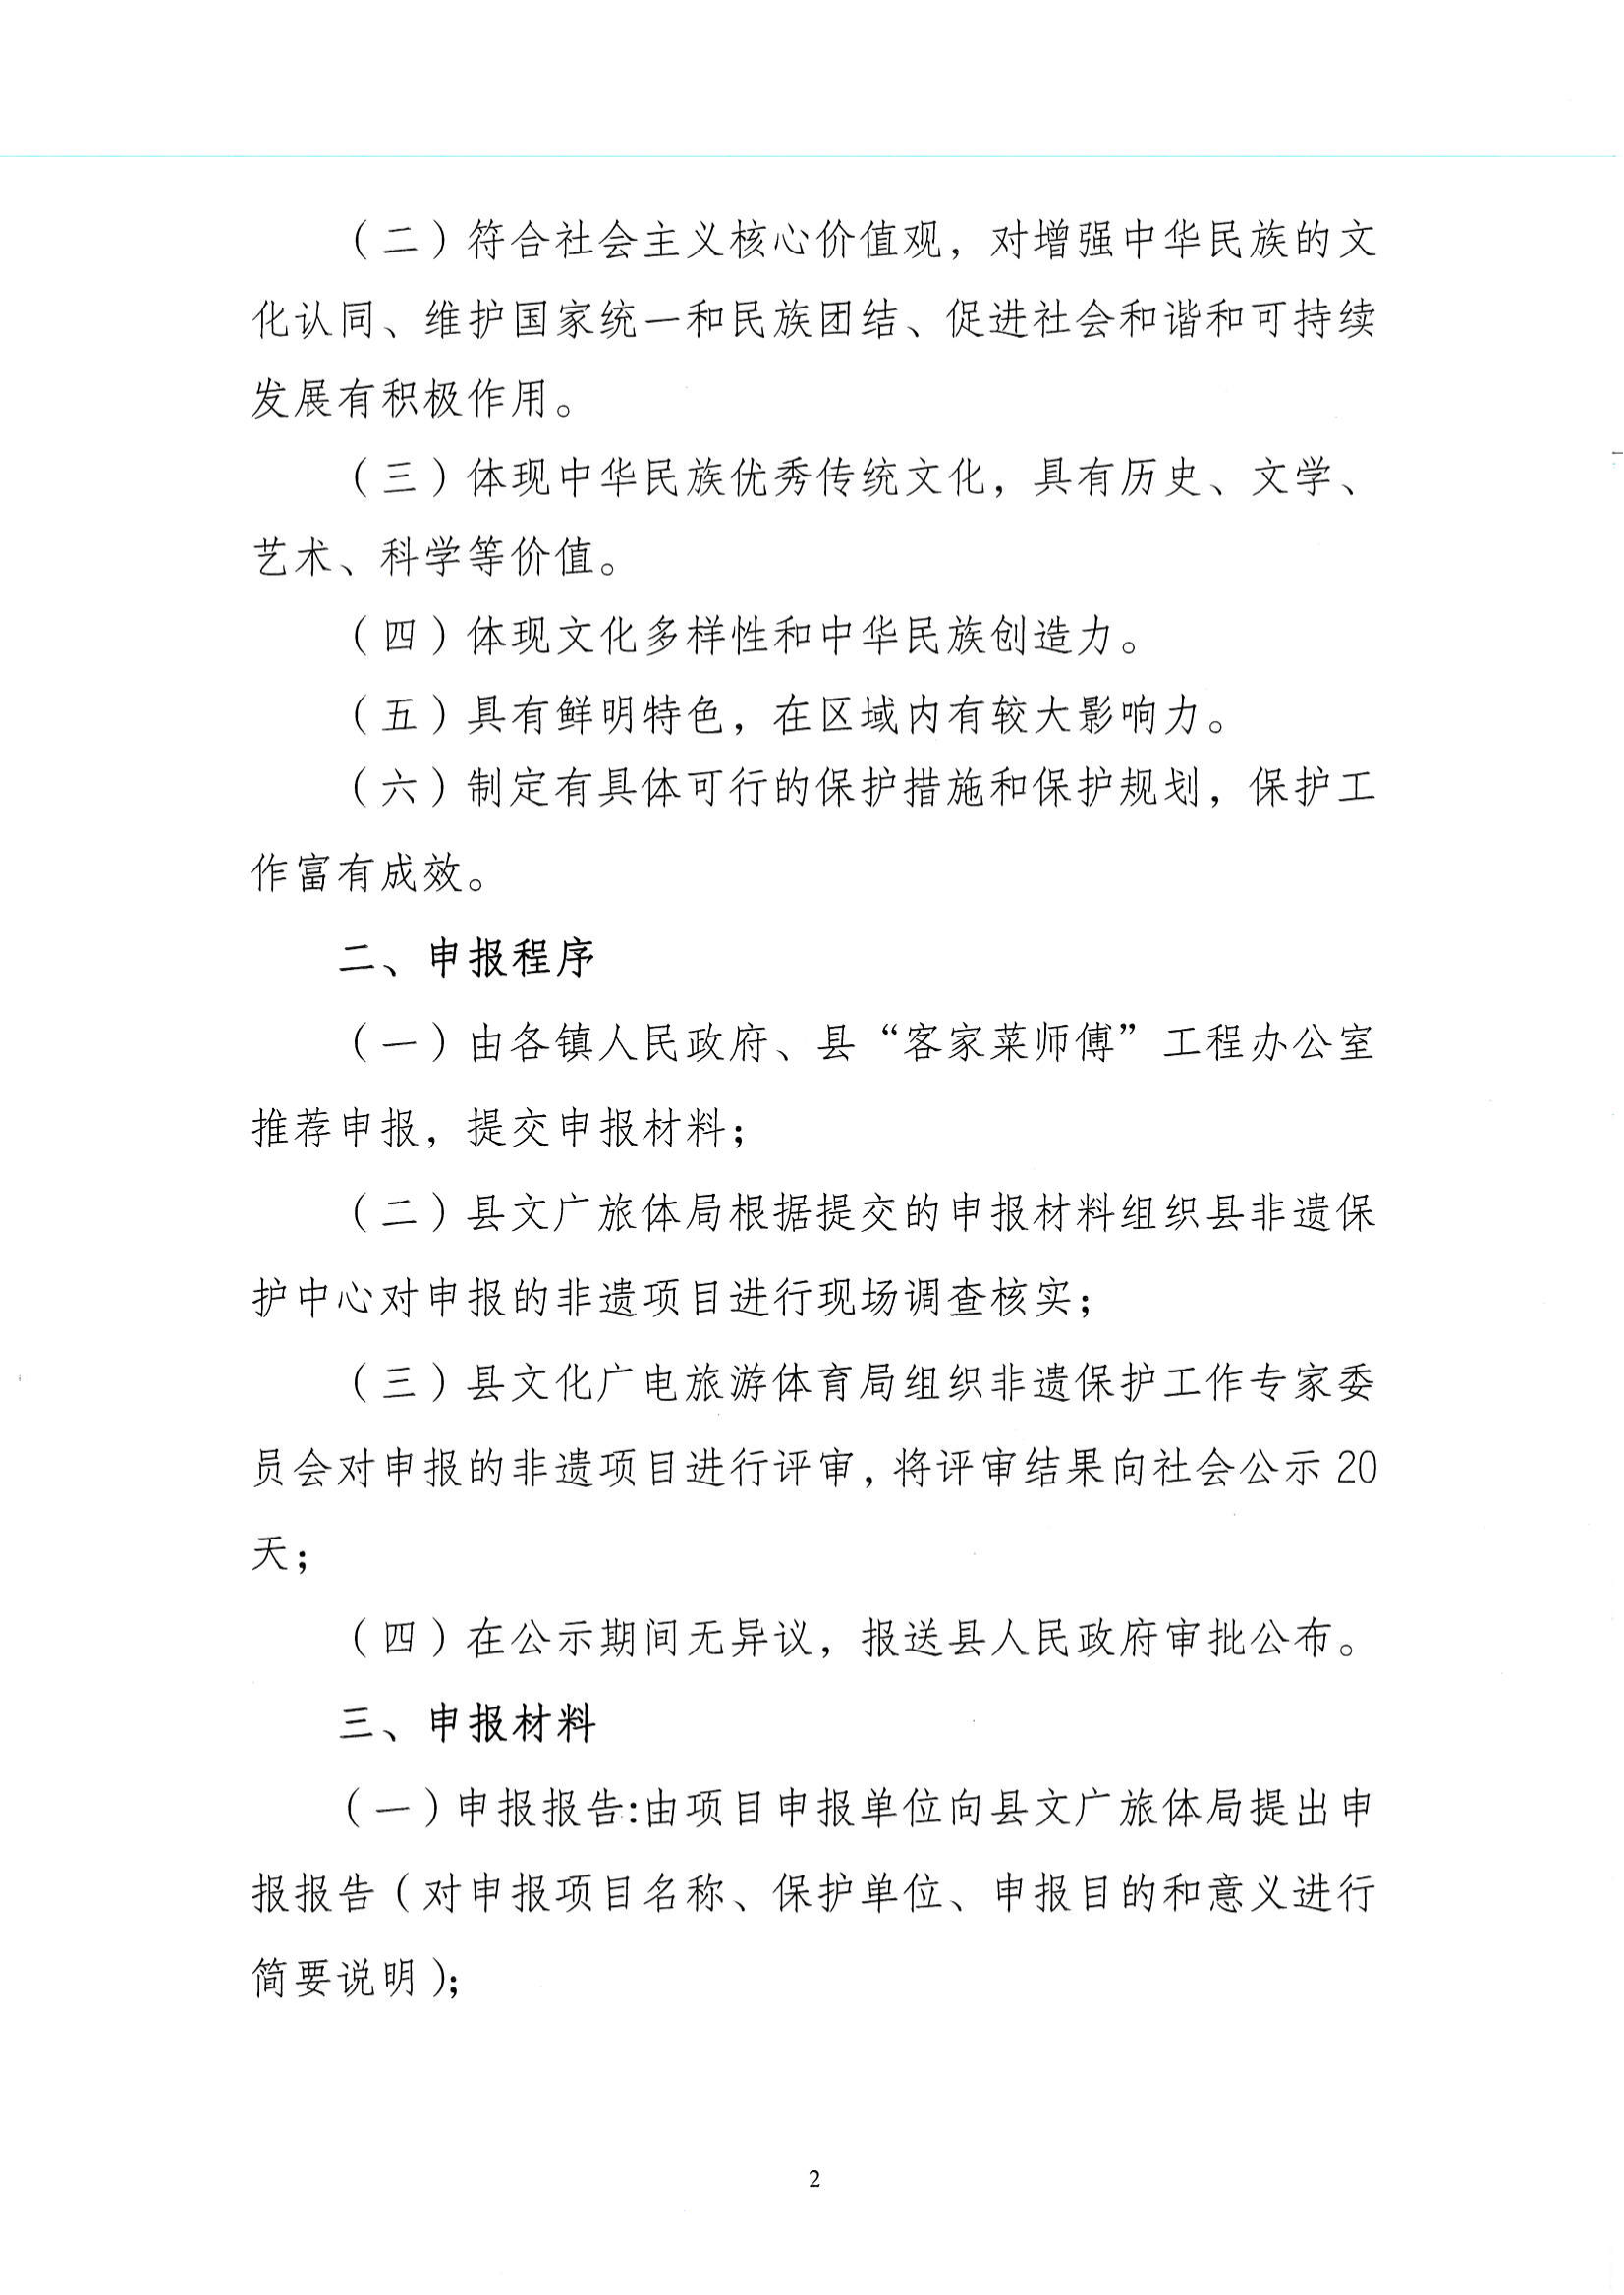 华文广旅体字〔2021〕24号  代表性项目推荐申报工作的通知_01.png